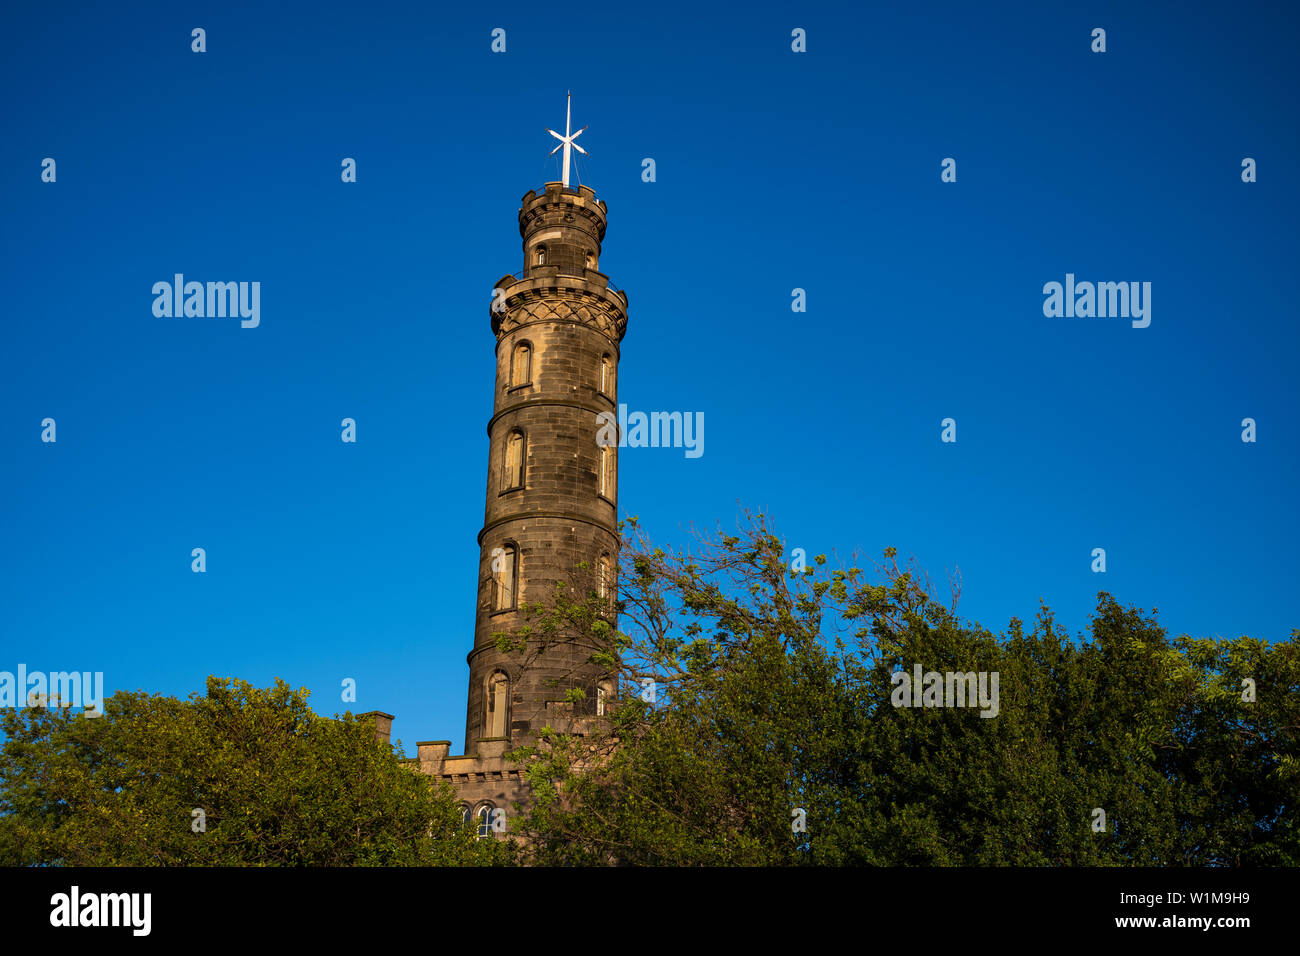 Die Nelson Monument, einem Turm zu Ehren von Vice Admiral Horatio Nelson, oben auf dem Calton Hill, Edinburgh, Schottland. Stockfoto